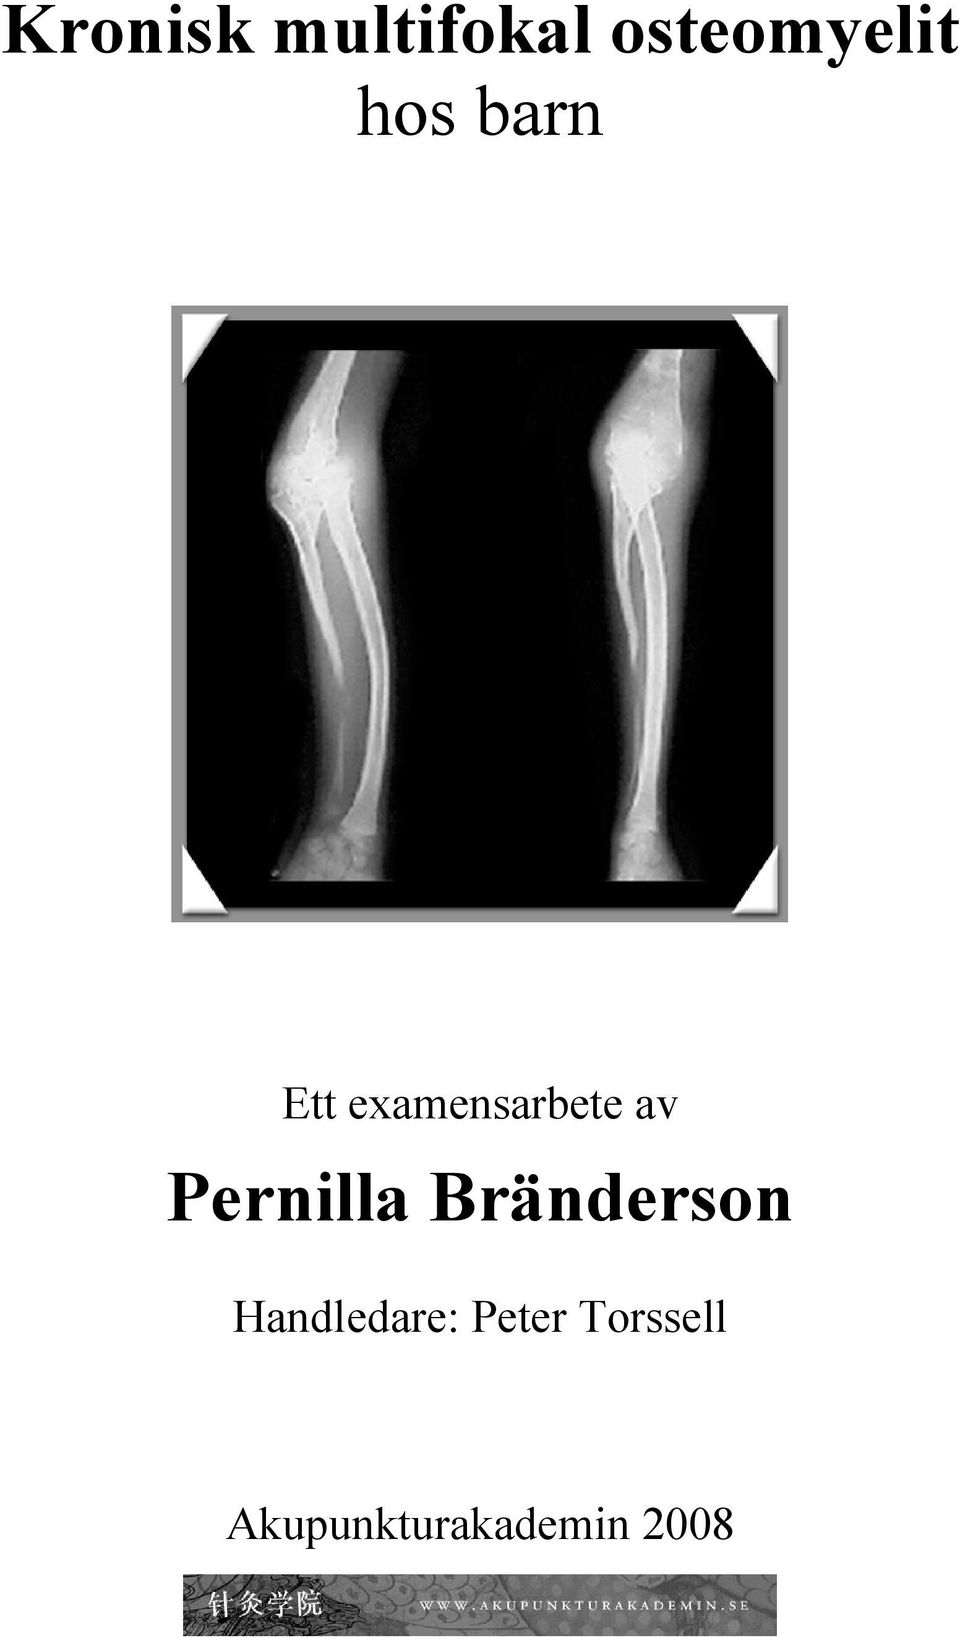 Pernilla Bränderson Handledare: